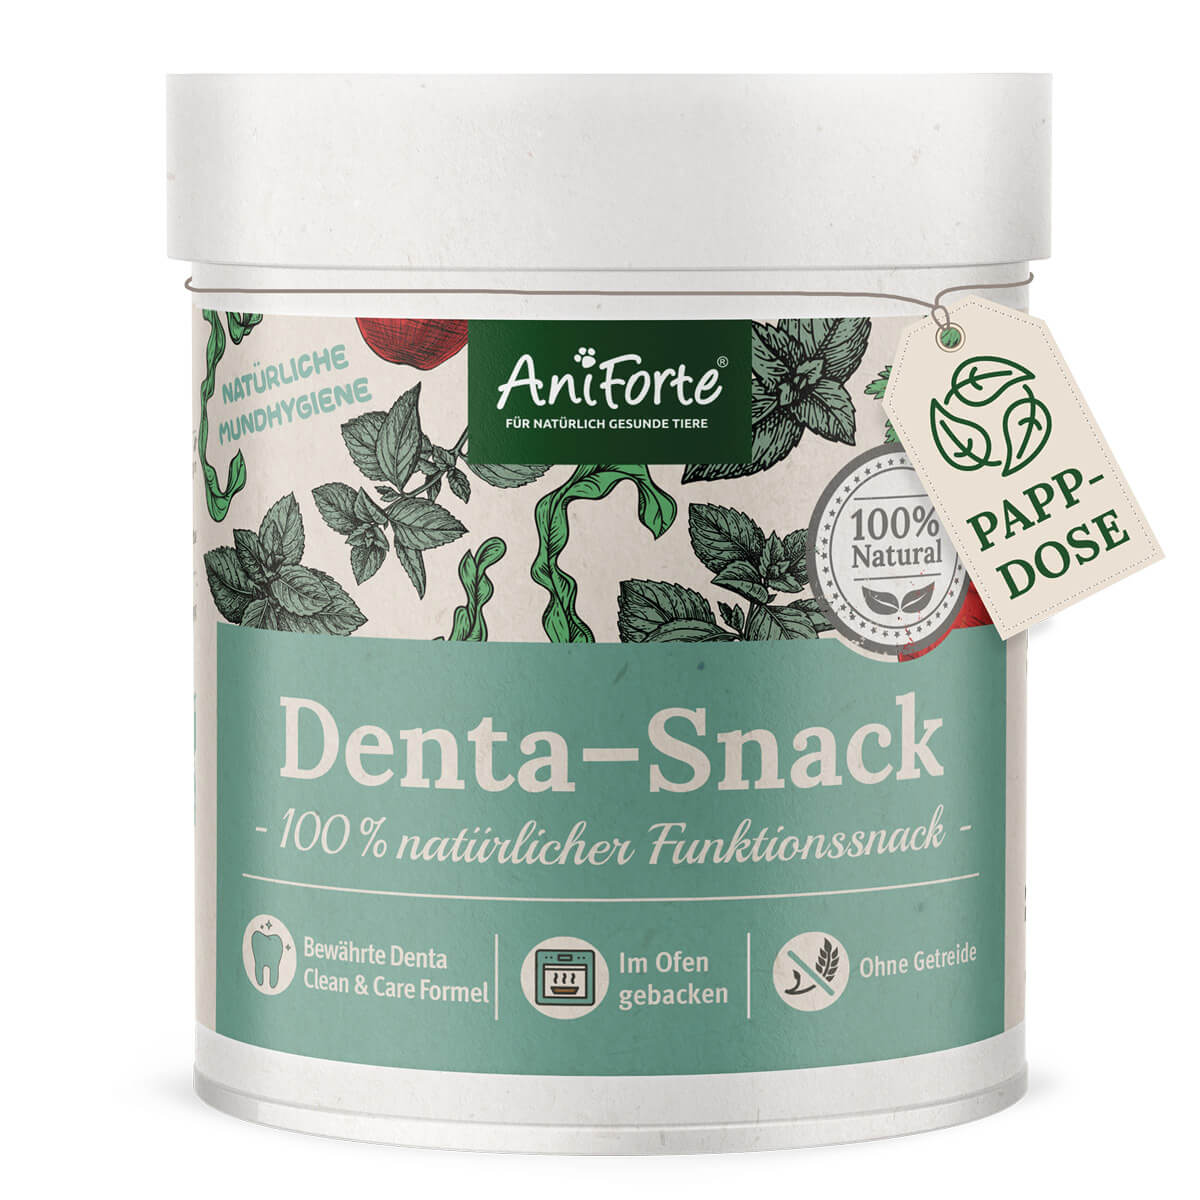 Natürlicher Funktionssnack Denta-Snack für Mundhygiene- AniForte